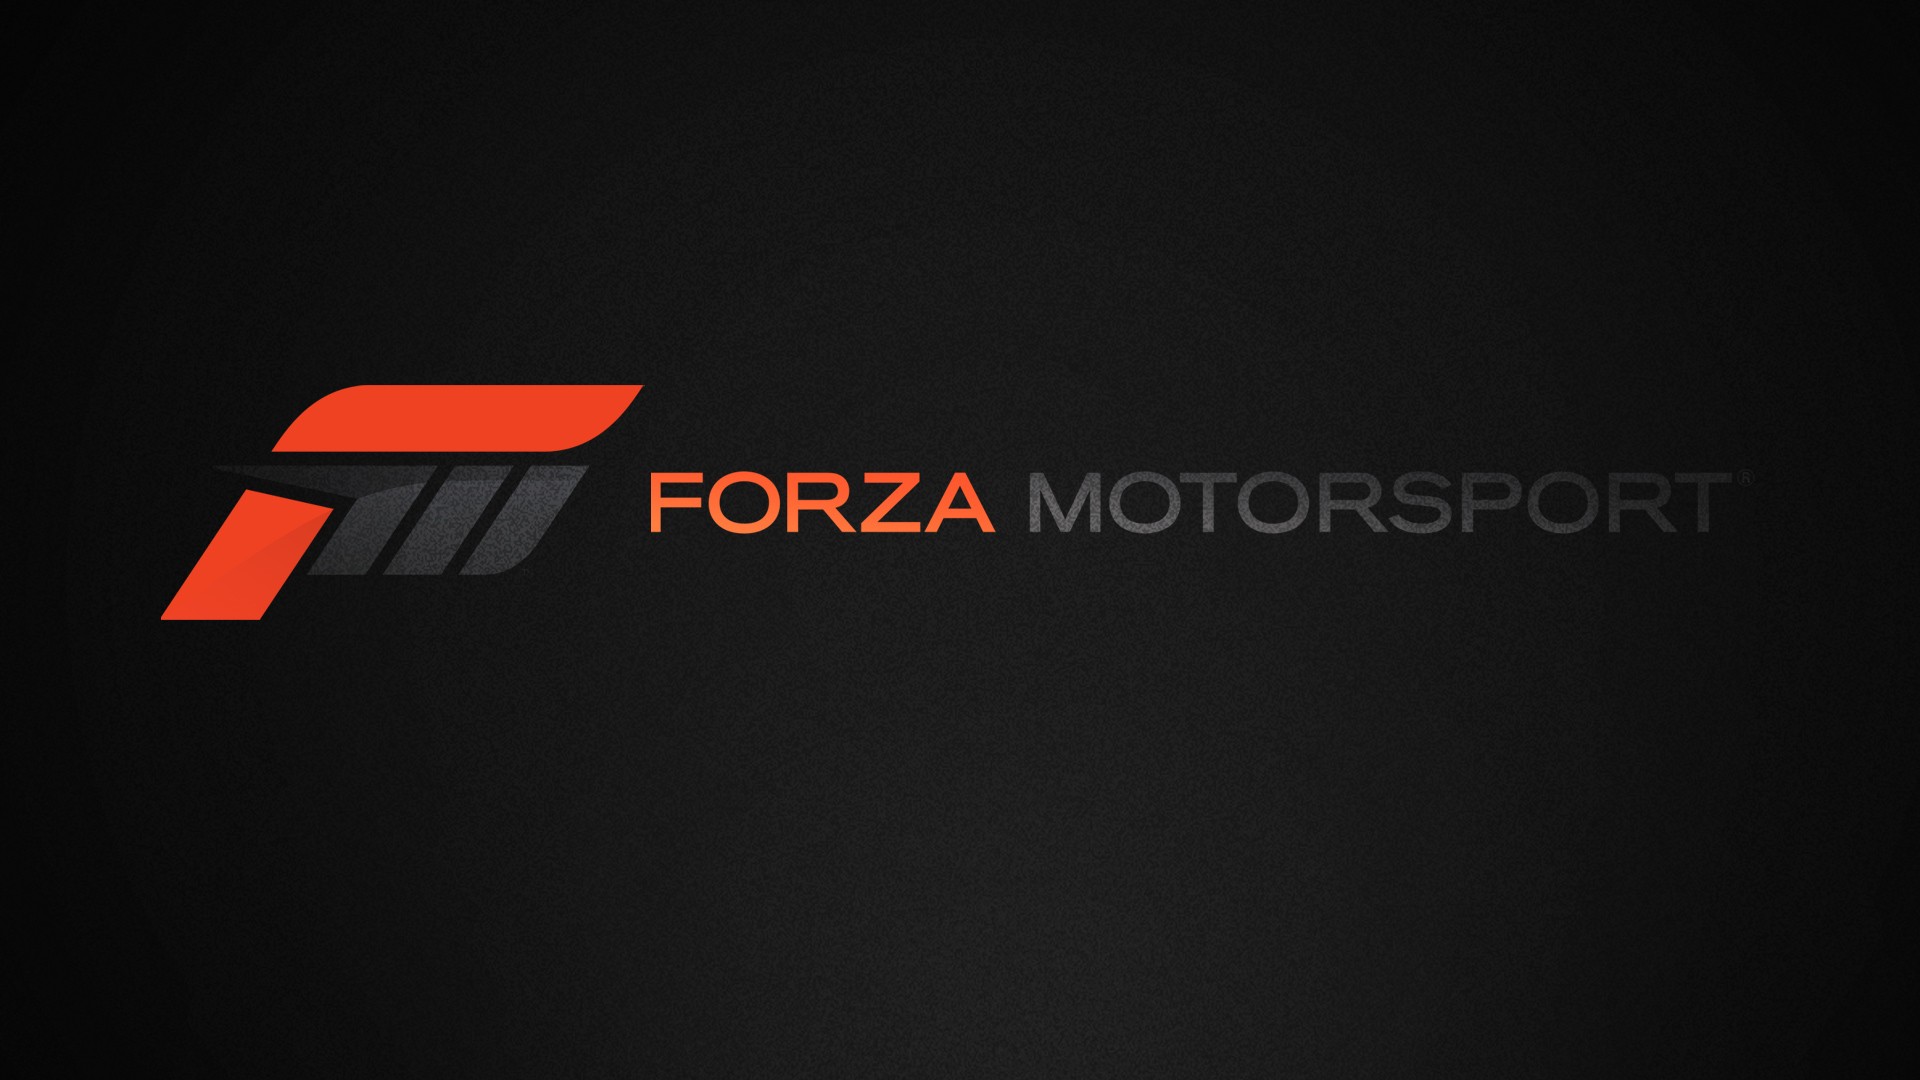 Forza Motorsport Forza Xbox Xbox One Xbox 360 Microsoft Video Games Logo Dark 1920x1080